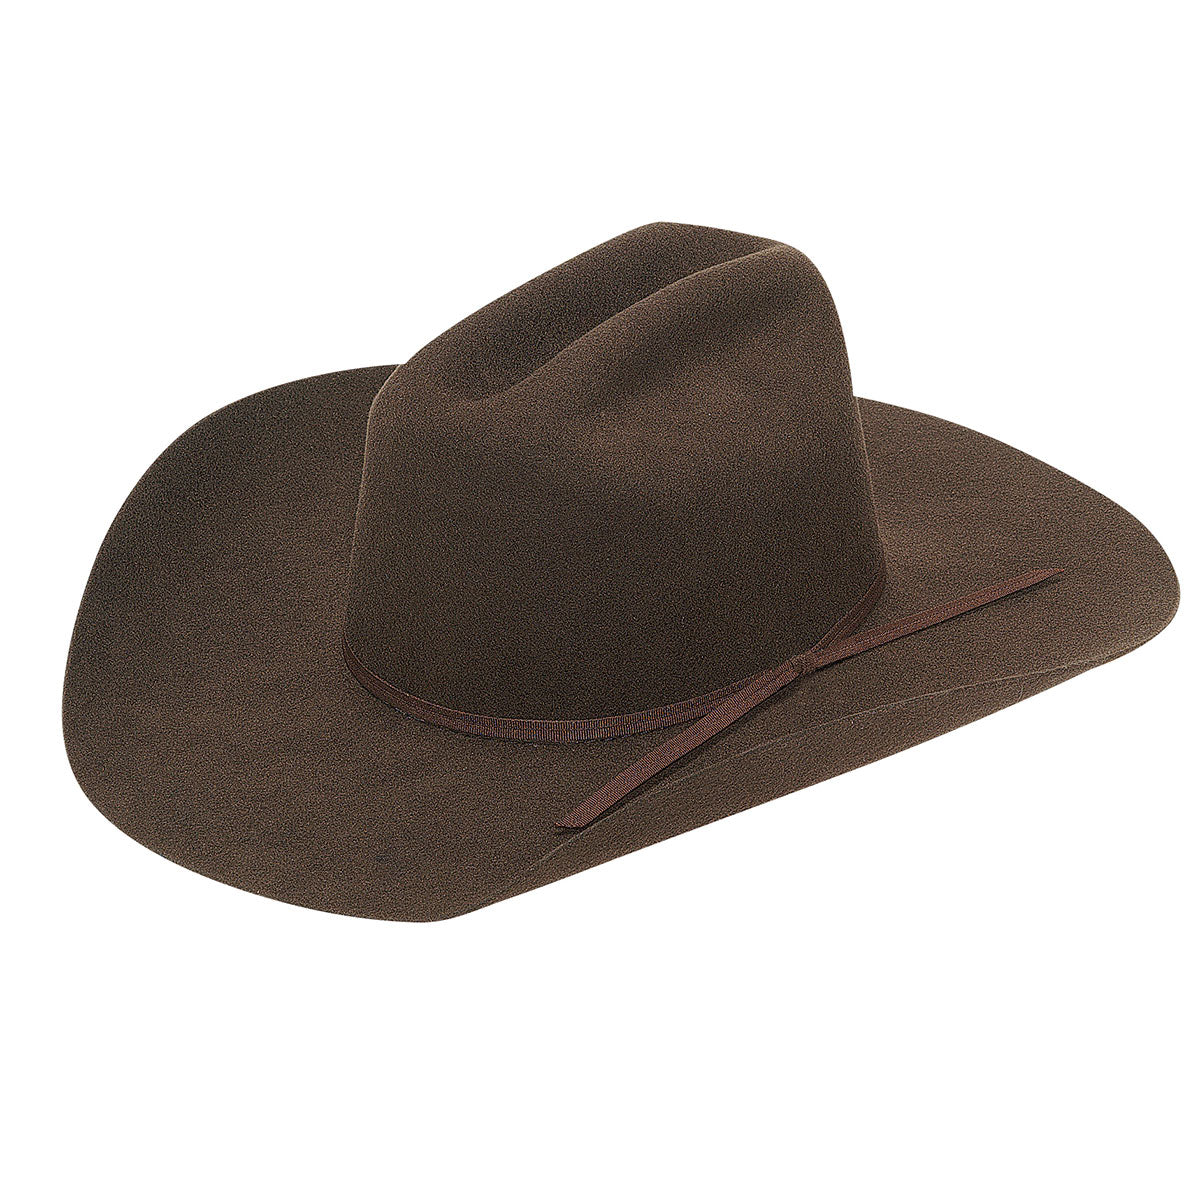 Twister Junior Cowboy Wool Felt Hat - Chocolate